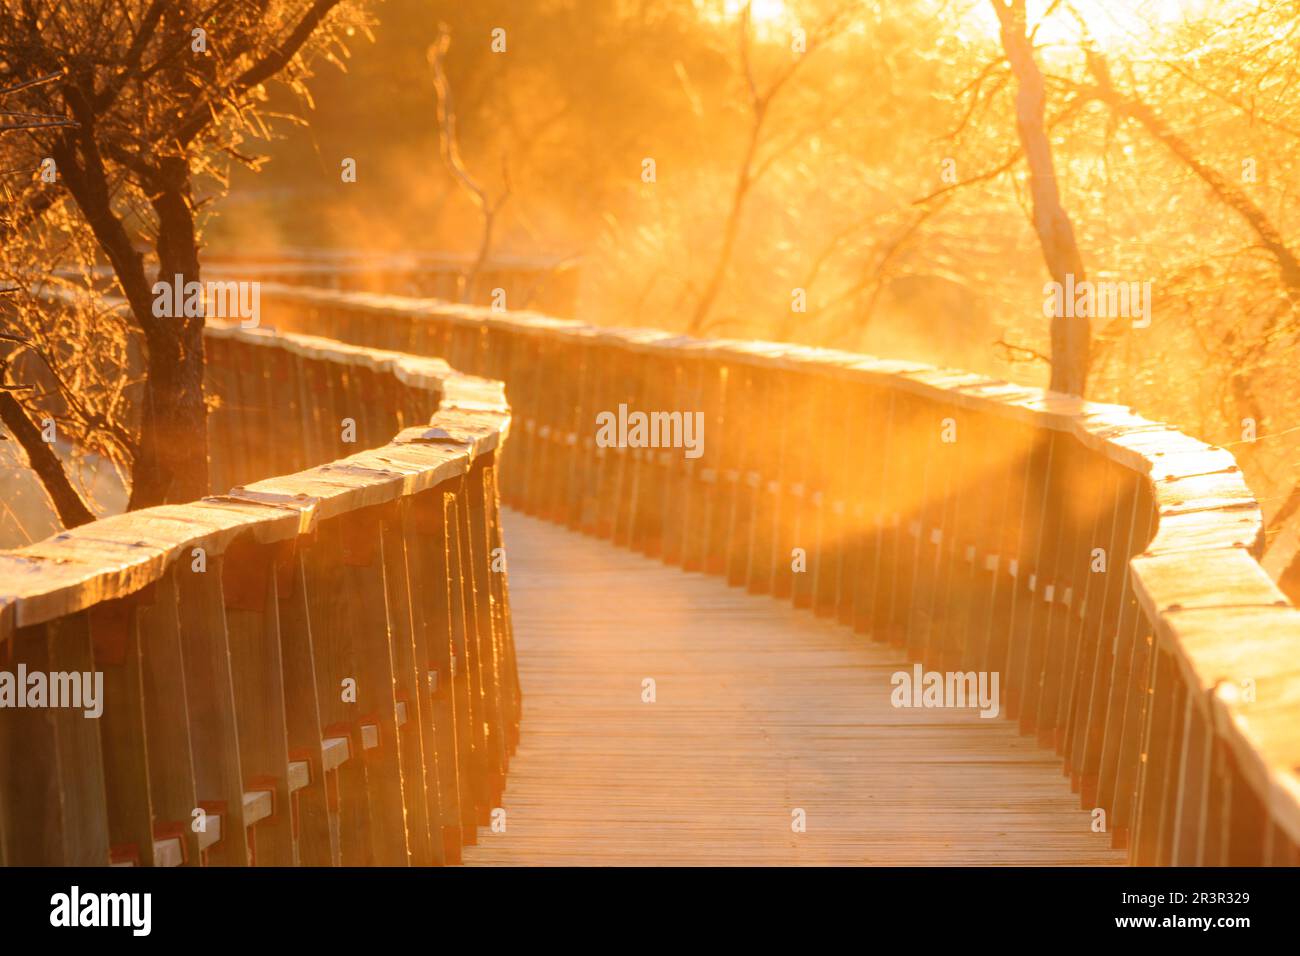 pasarelas al amanecer, parque nacional Tablas de Daimiel, Ciudad Real, Castilla-La Mancha, españa, europa. Stock Photo